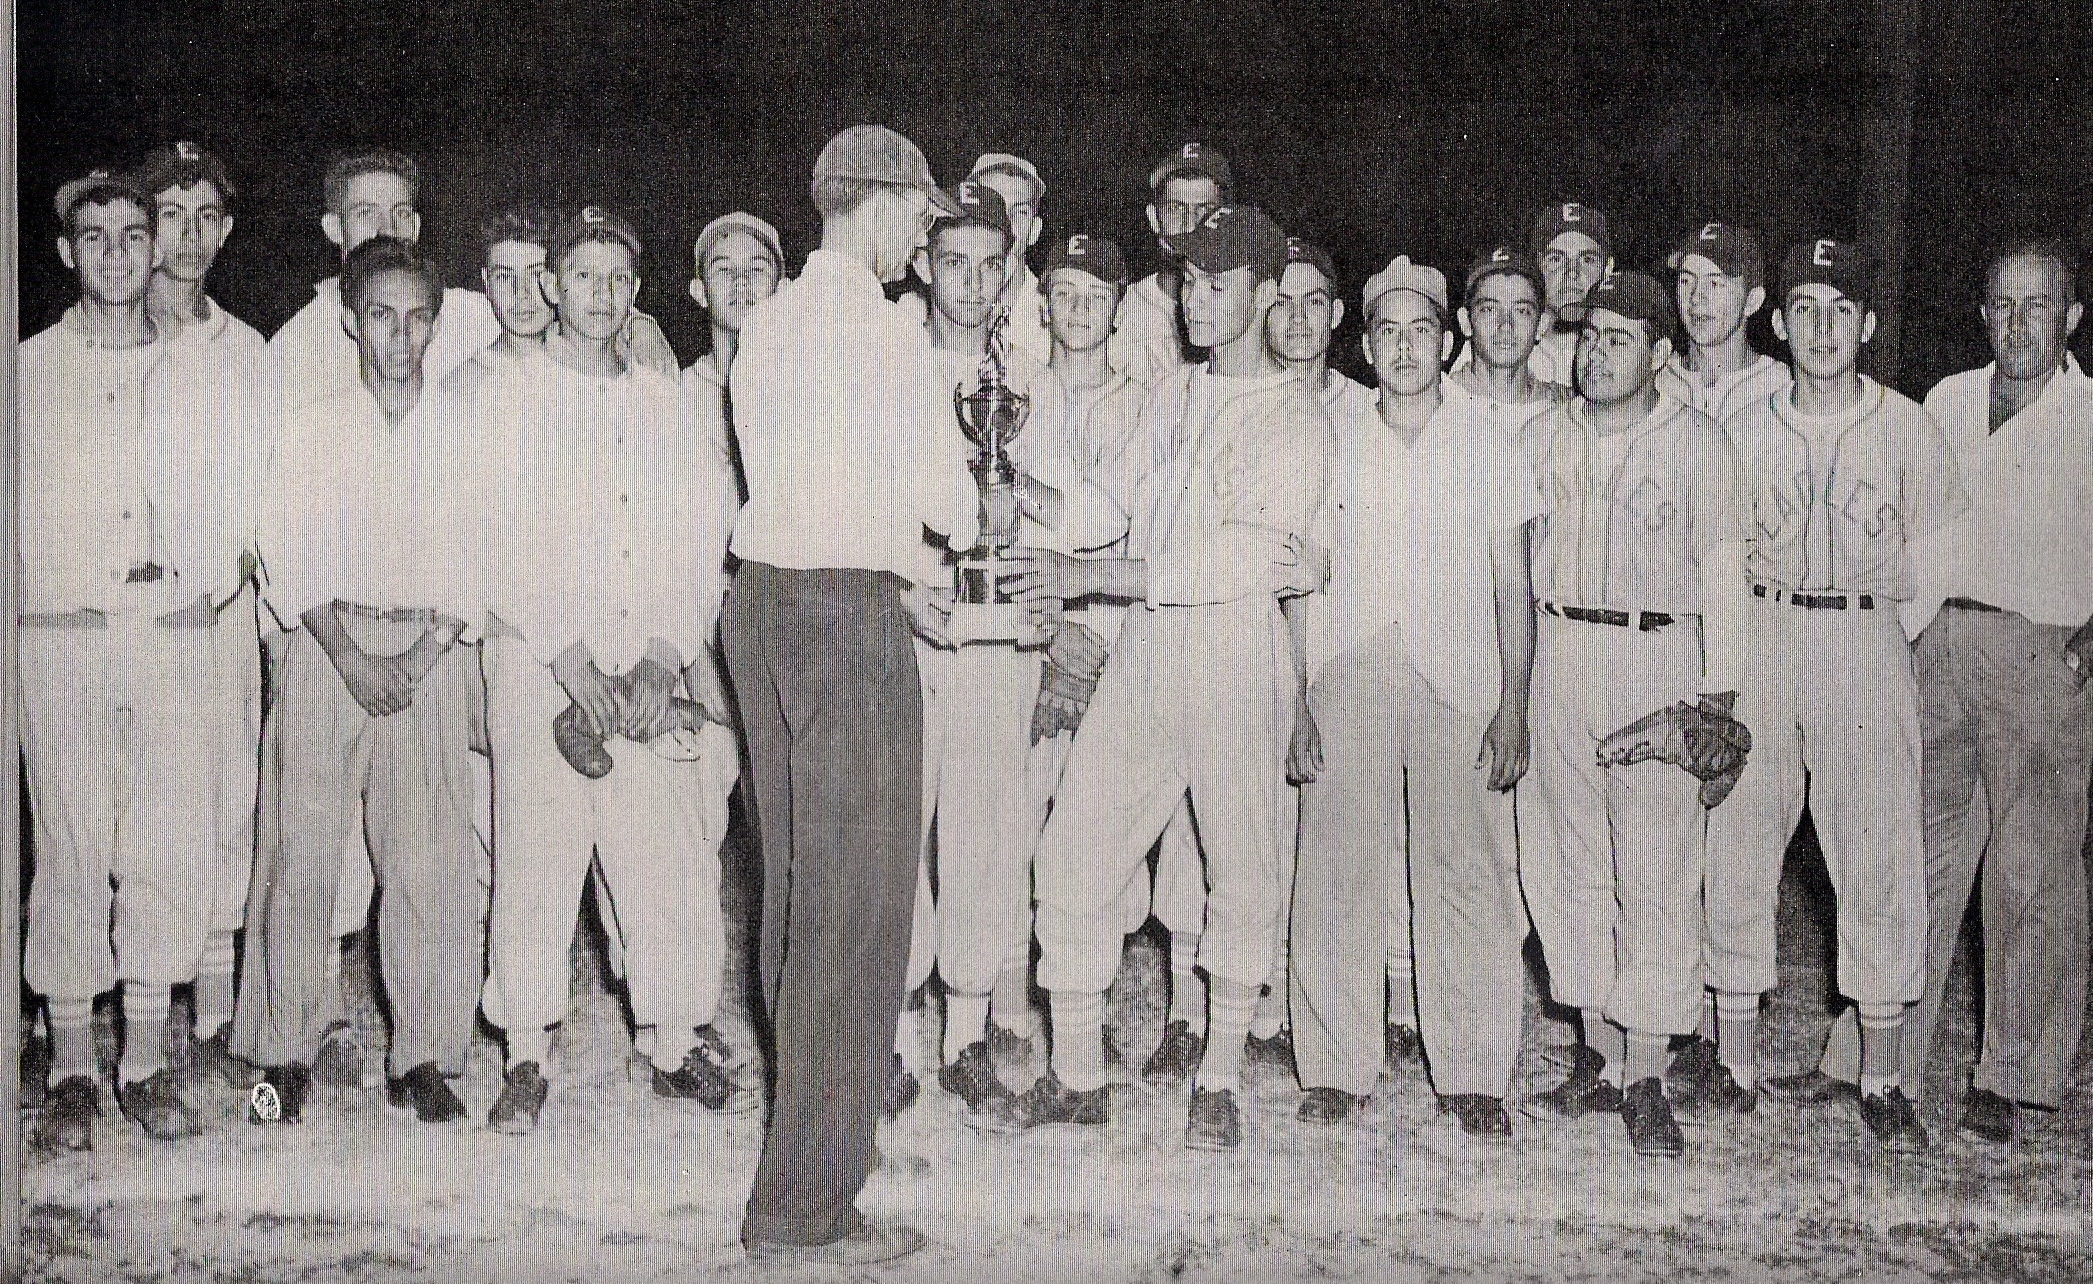 1953ephsbaseballteam.jpg